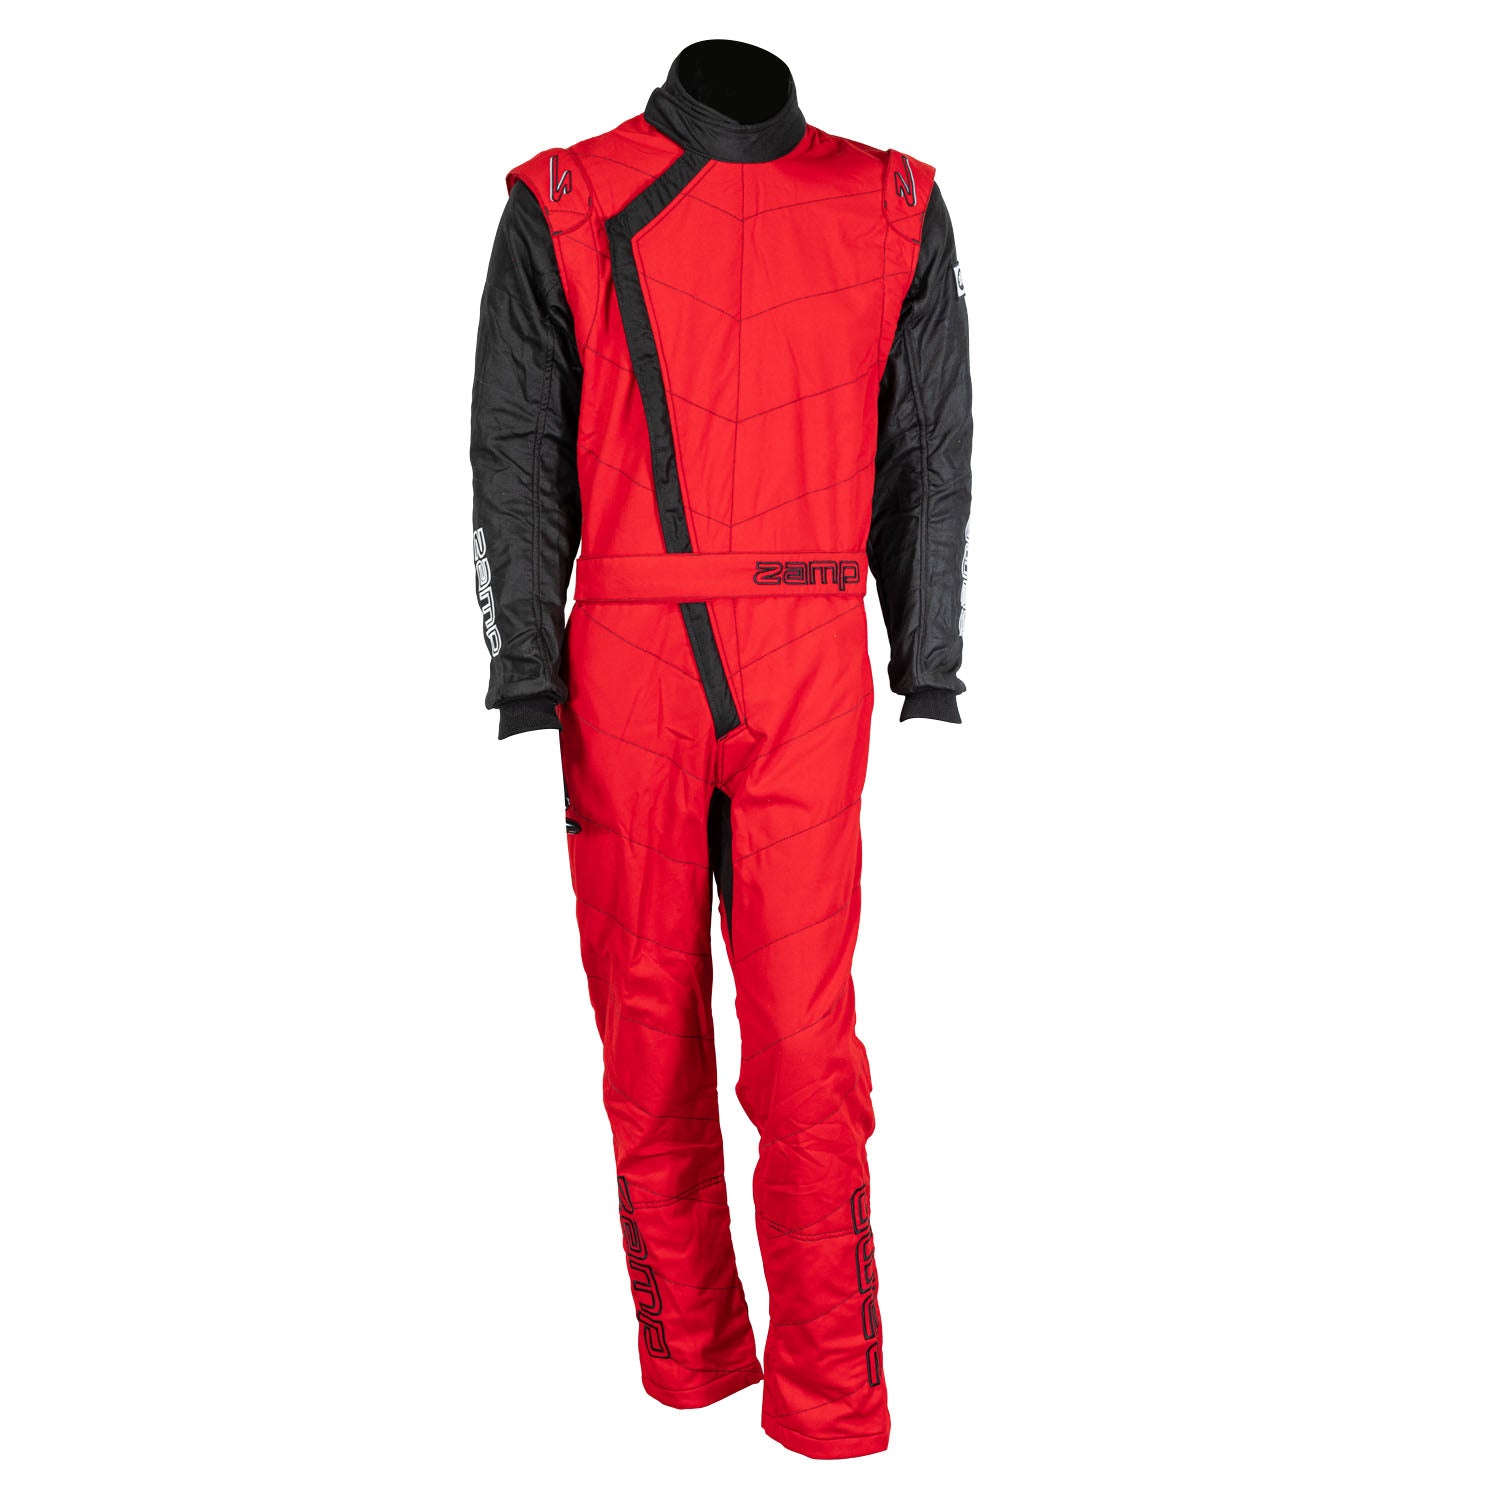 ZAMP Racing ZR-40 Race Suit Red R07C02L